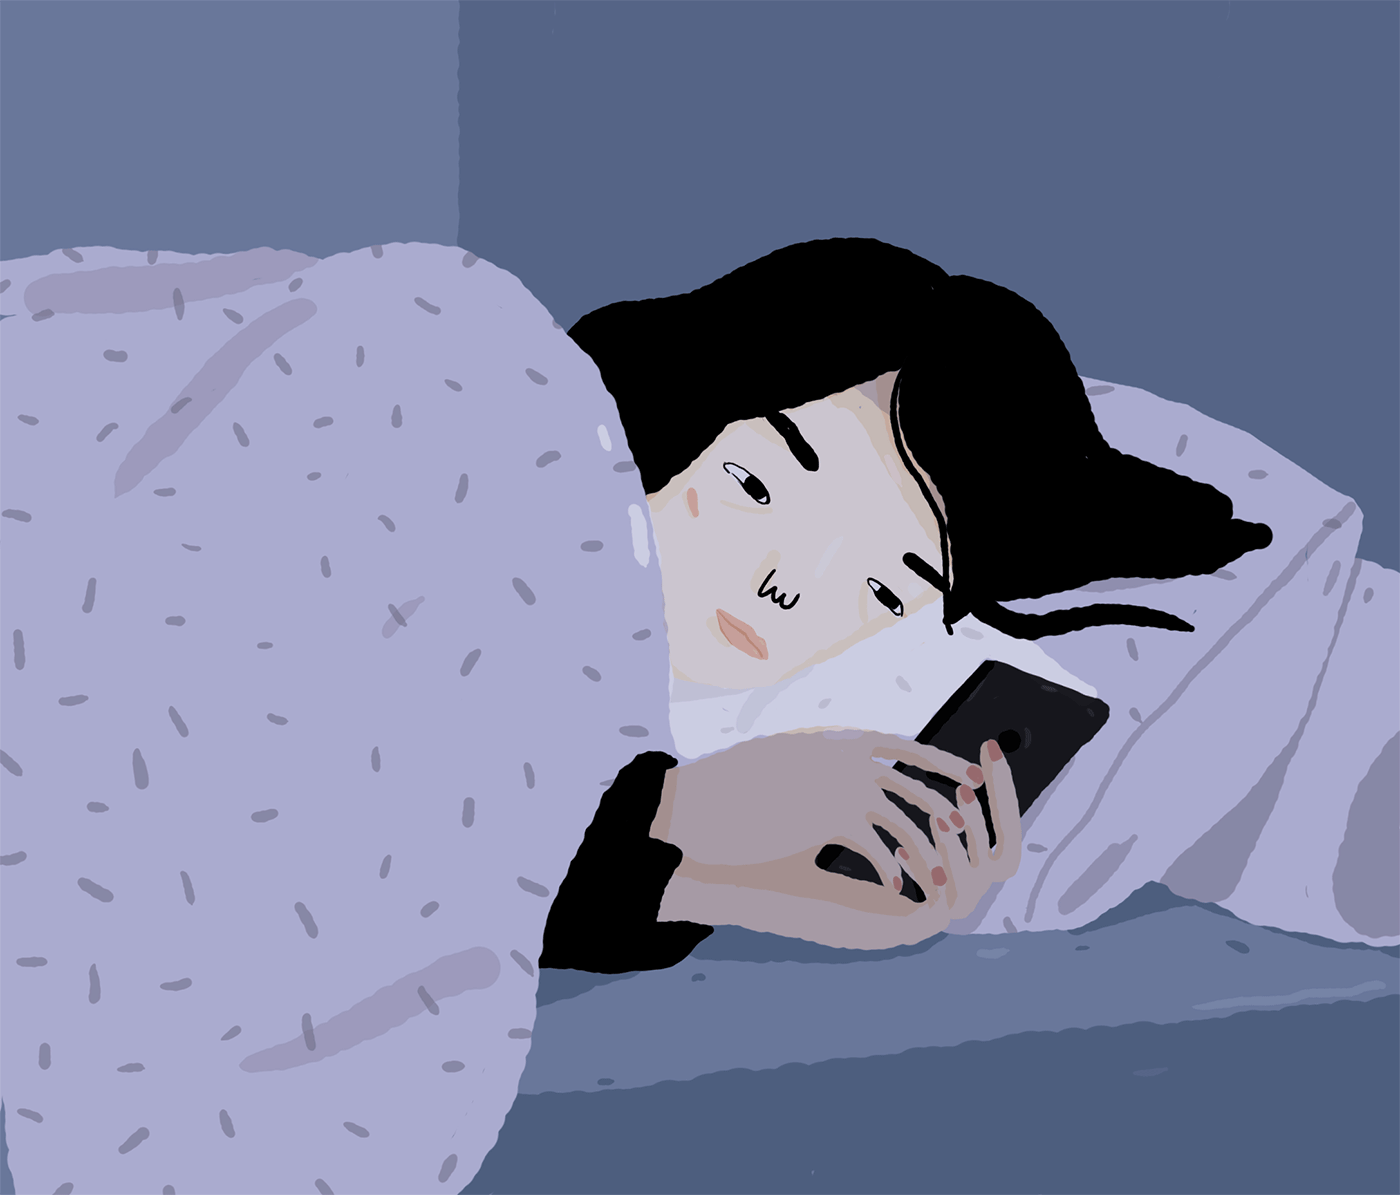 Жена плачет во сне. Сон иллюстрация. Сон мультипликация. Сонная девушка иллюстрация.